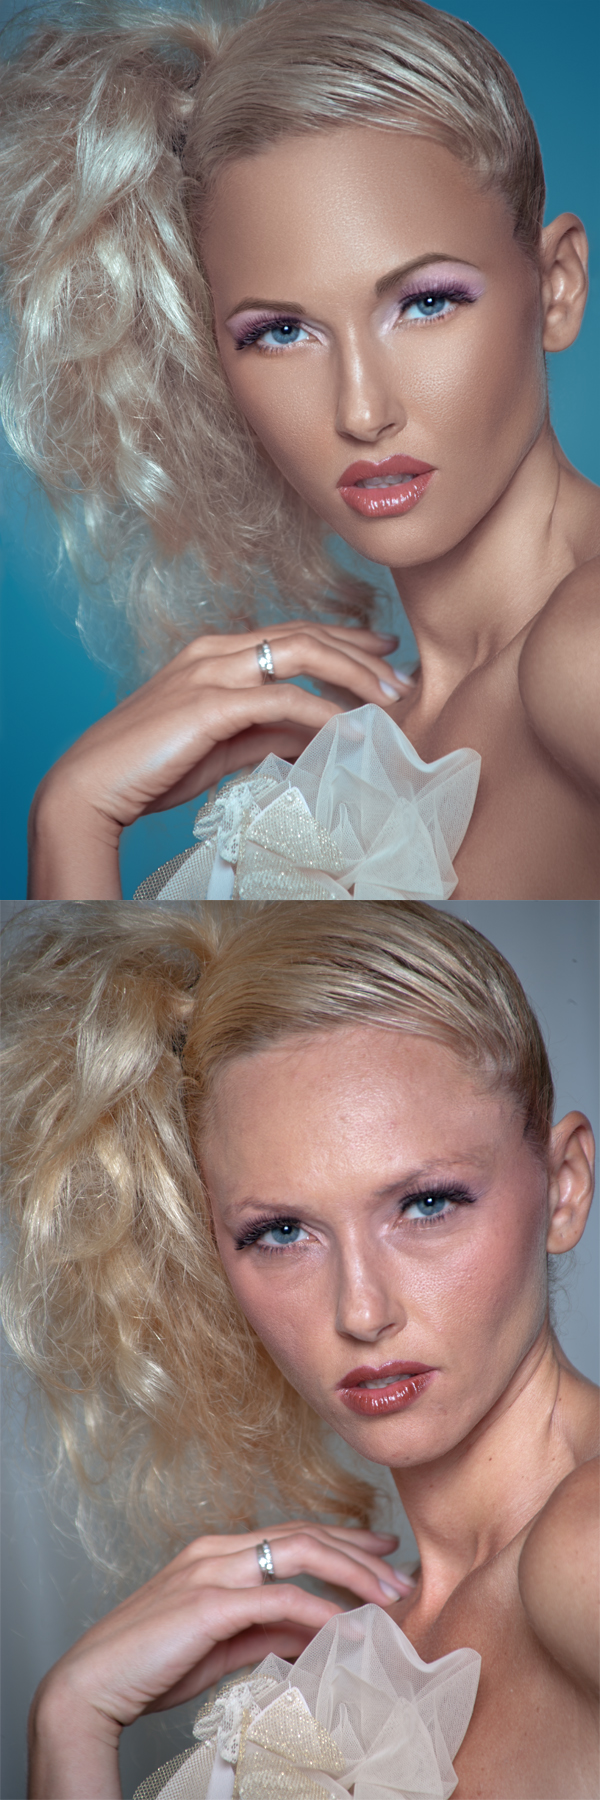 Female model photo shoot of Lexa-retouch